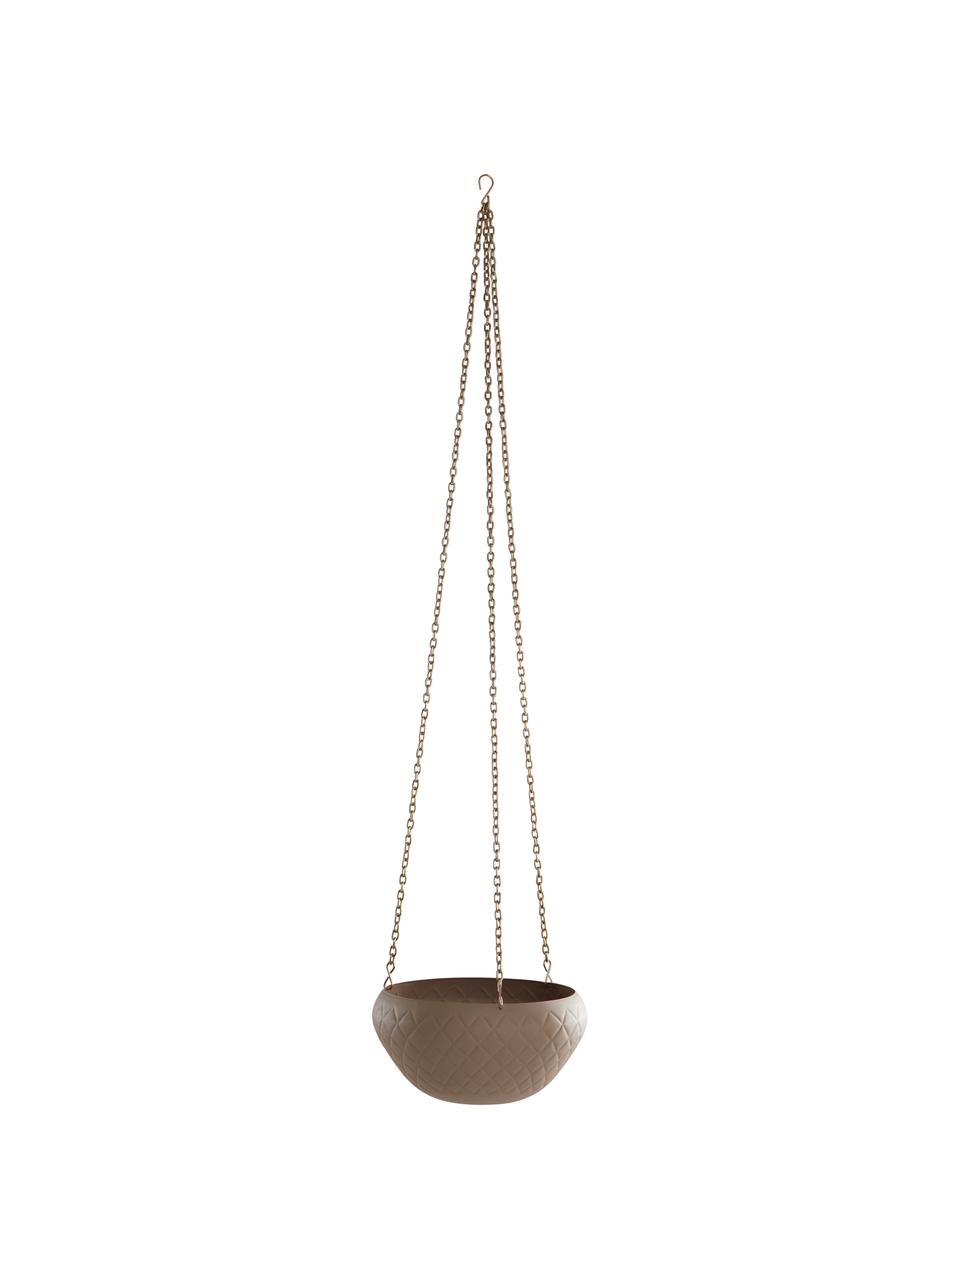 Hangende plantenpot Gullan, Gecoat metaal, Beige, Ø 25 x H 13 cm